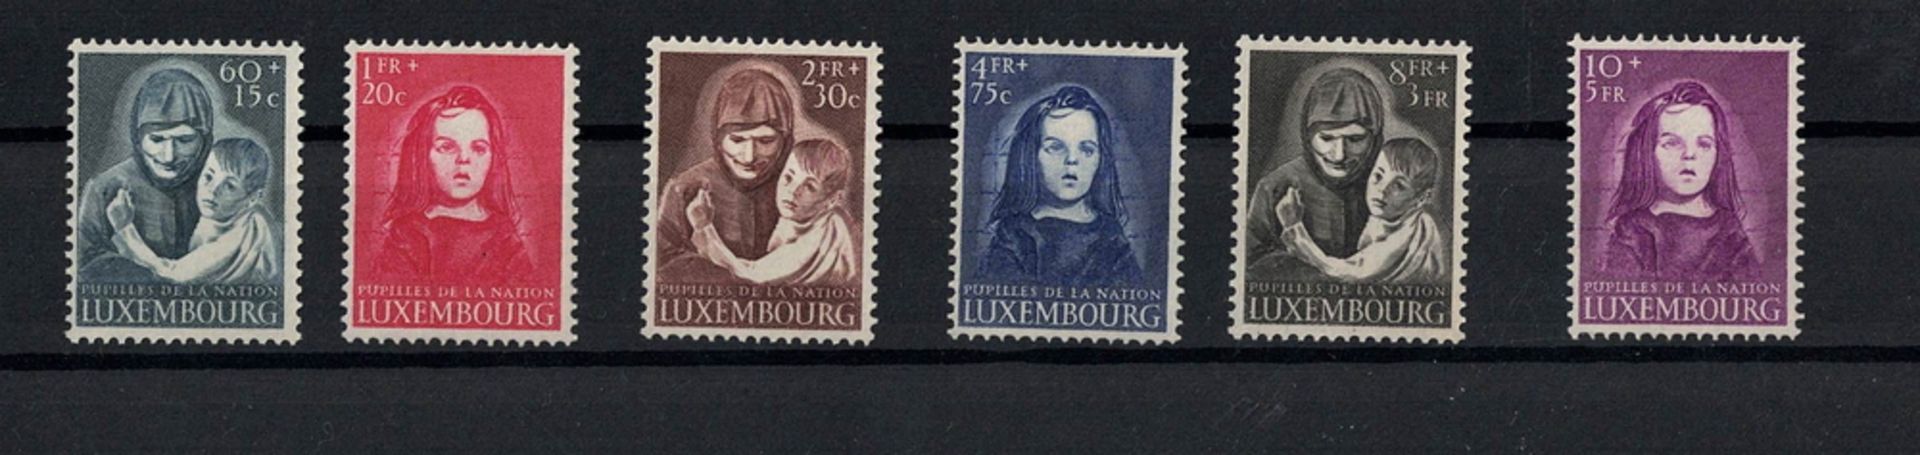 Luxemburg 1950. MiNr. 468-473, postfrisch.